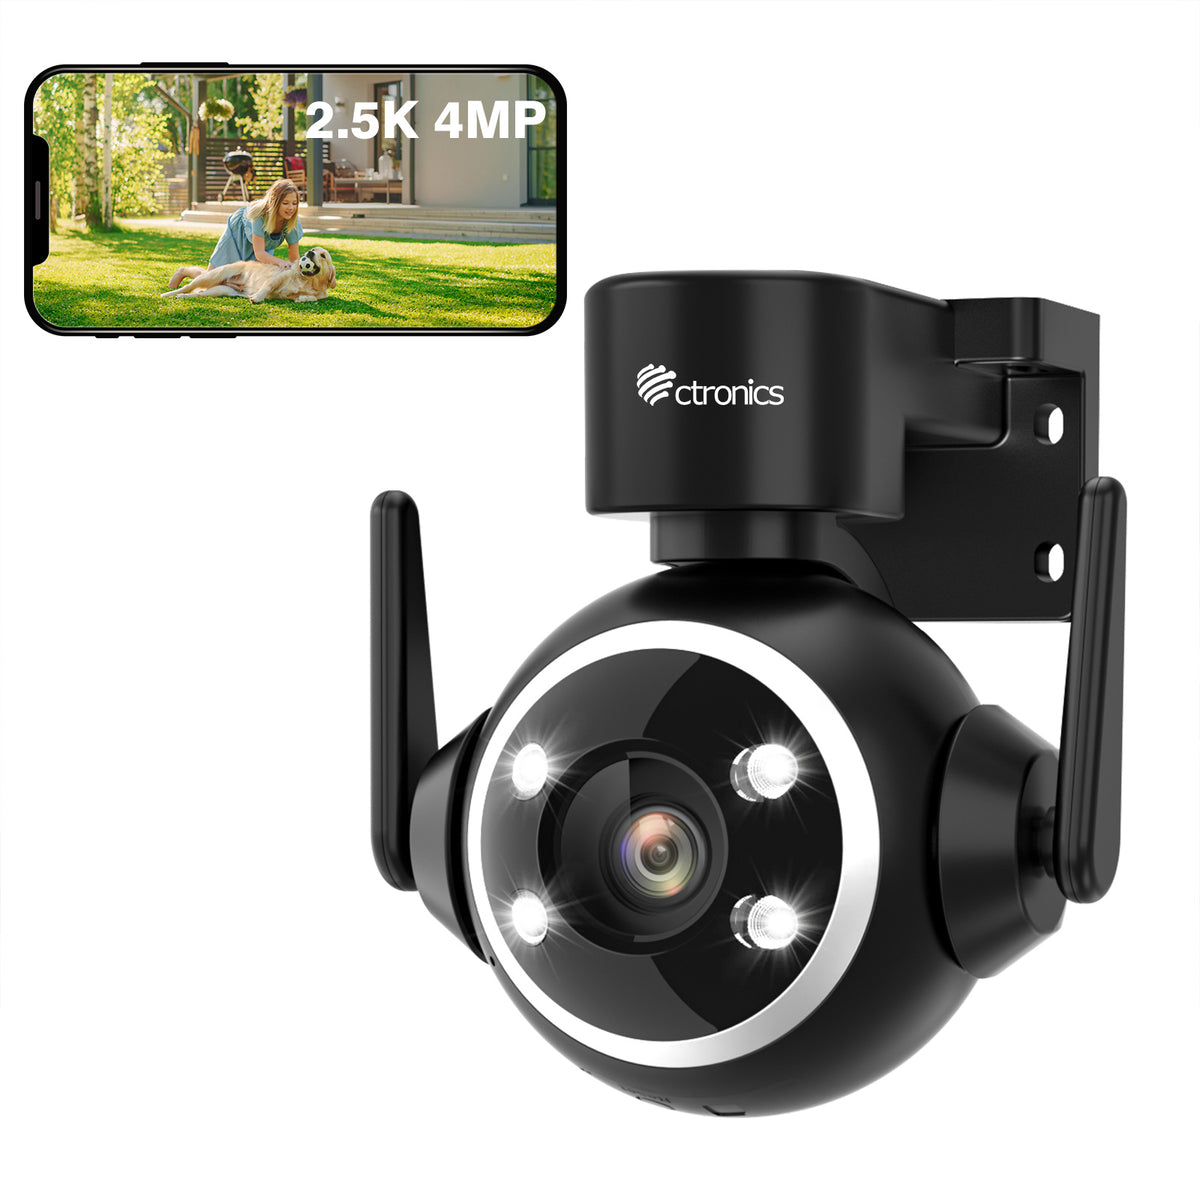 Caméra de surveillance extérieure Ctronics 2,5K 4MP WLAN 2,4/5 GHz et enregistrement 7/24